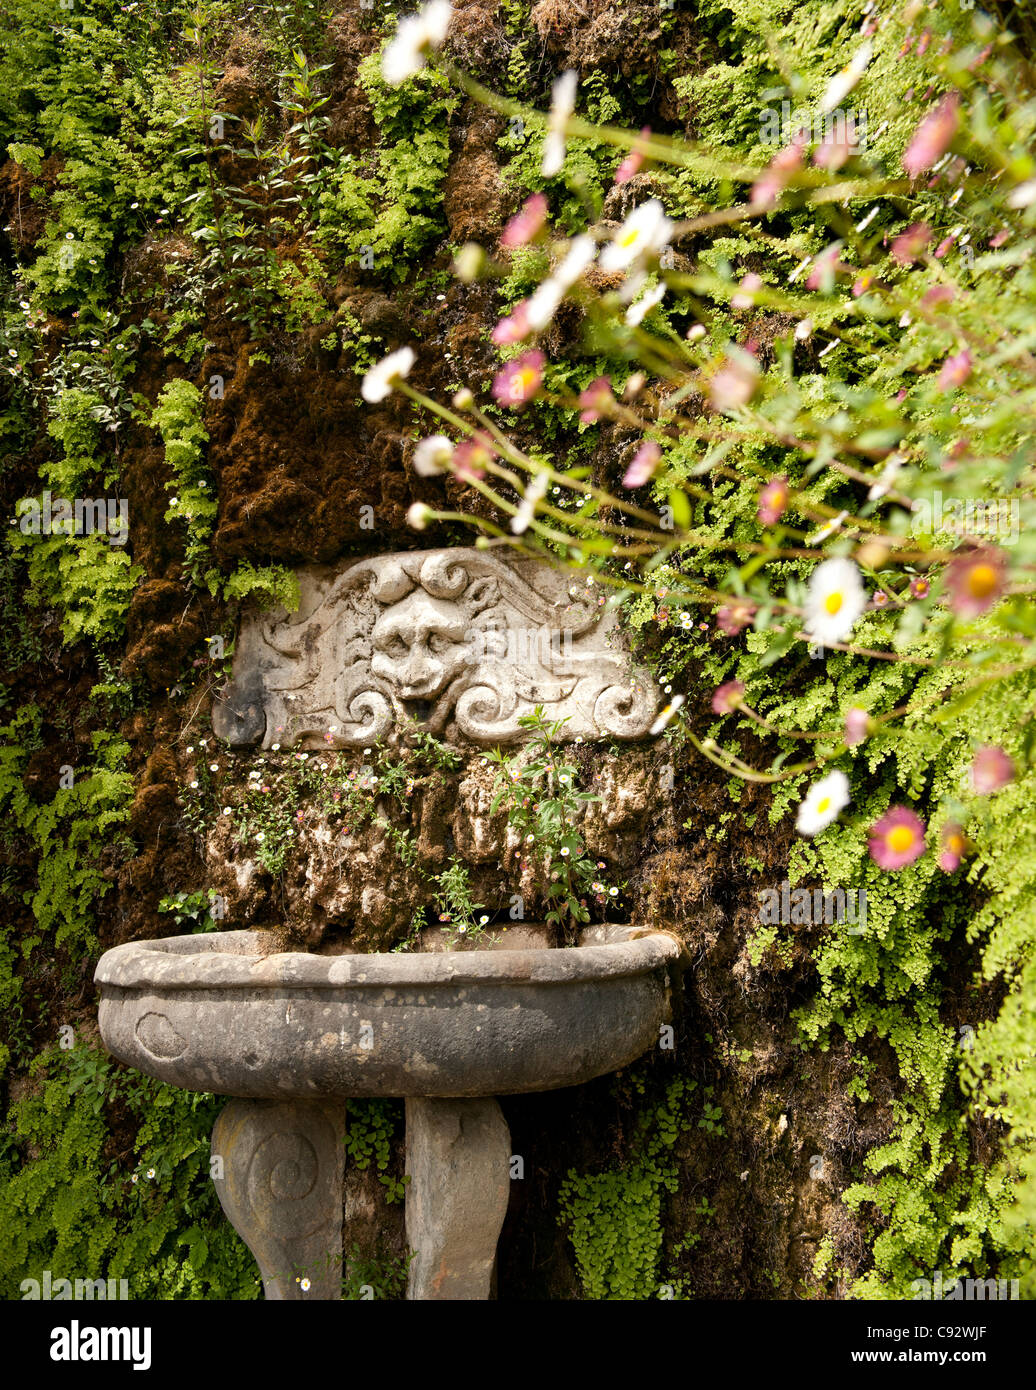 Die Verwendung von Stein geschnitzte Gesichter und Zeichen ist häufig in historischen Gärten im italienischen Stil. Verzierungen auf den Brunnen in der Villa Stockfoto